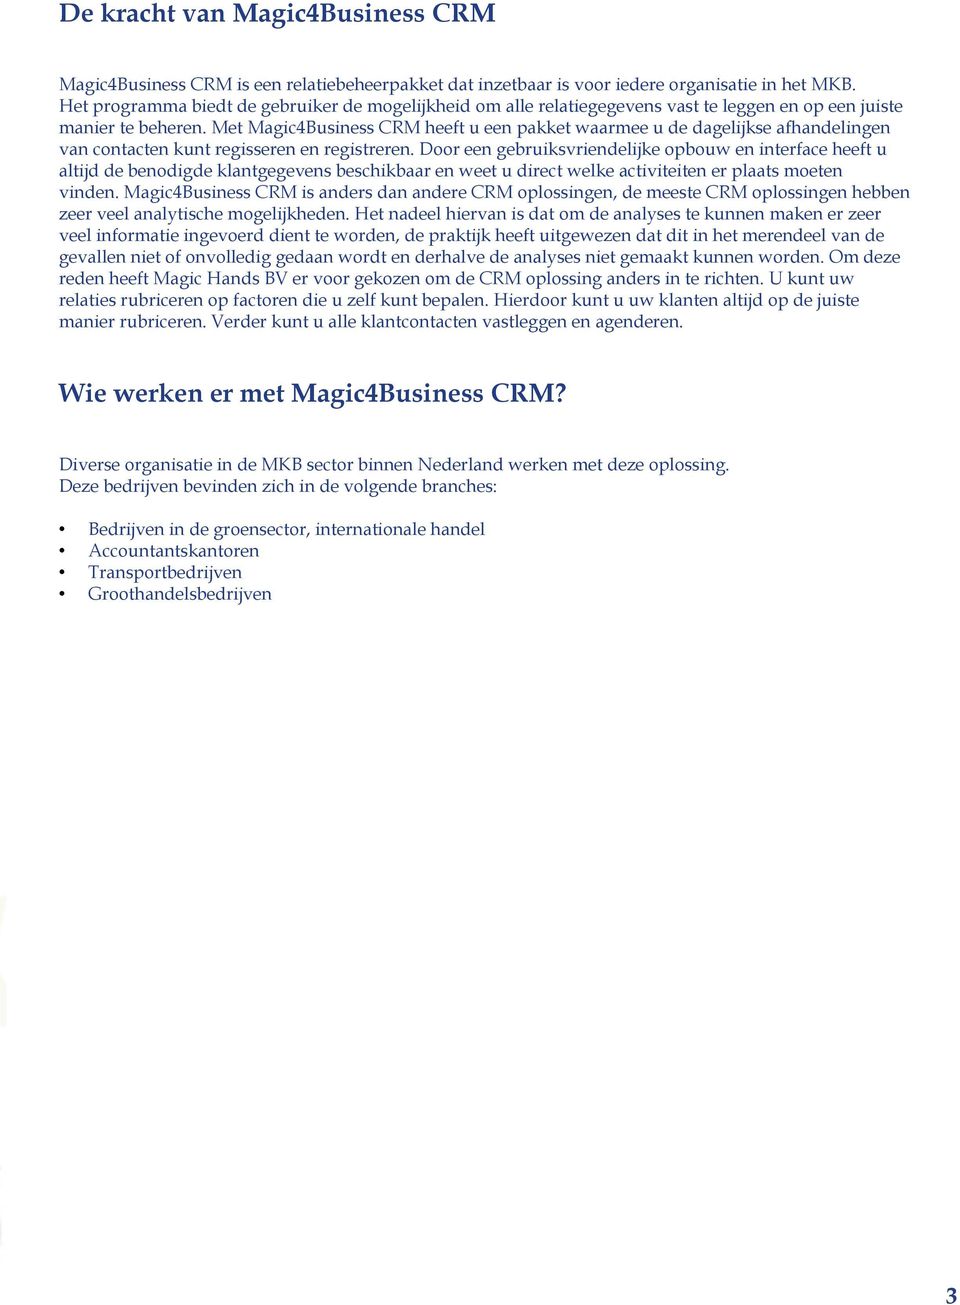 Met Magic4Business CRM heeft u een pakket waarmee u de dagelijkse afhandelingen van contacten kunt regisseren en registreren.